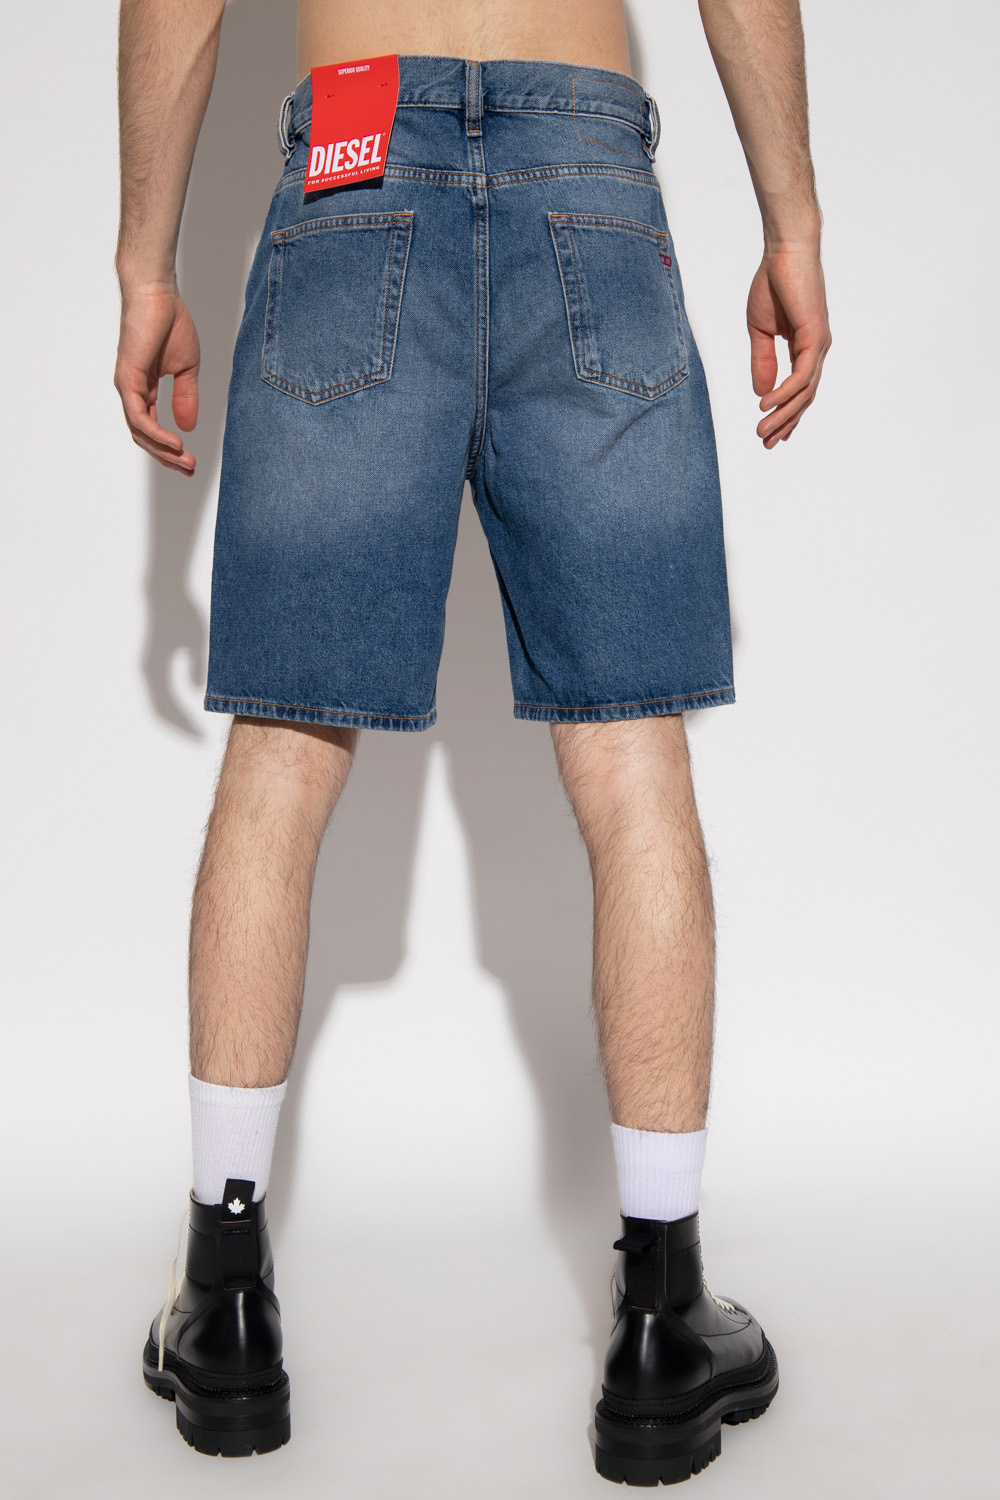 Diesel ‘D-Strukt’ denim shorts | Men's Clothing | Vitkac